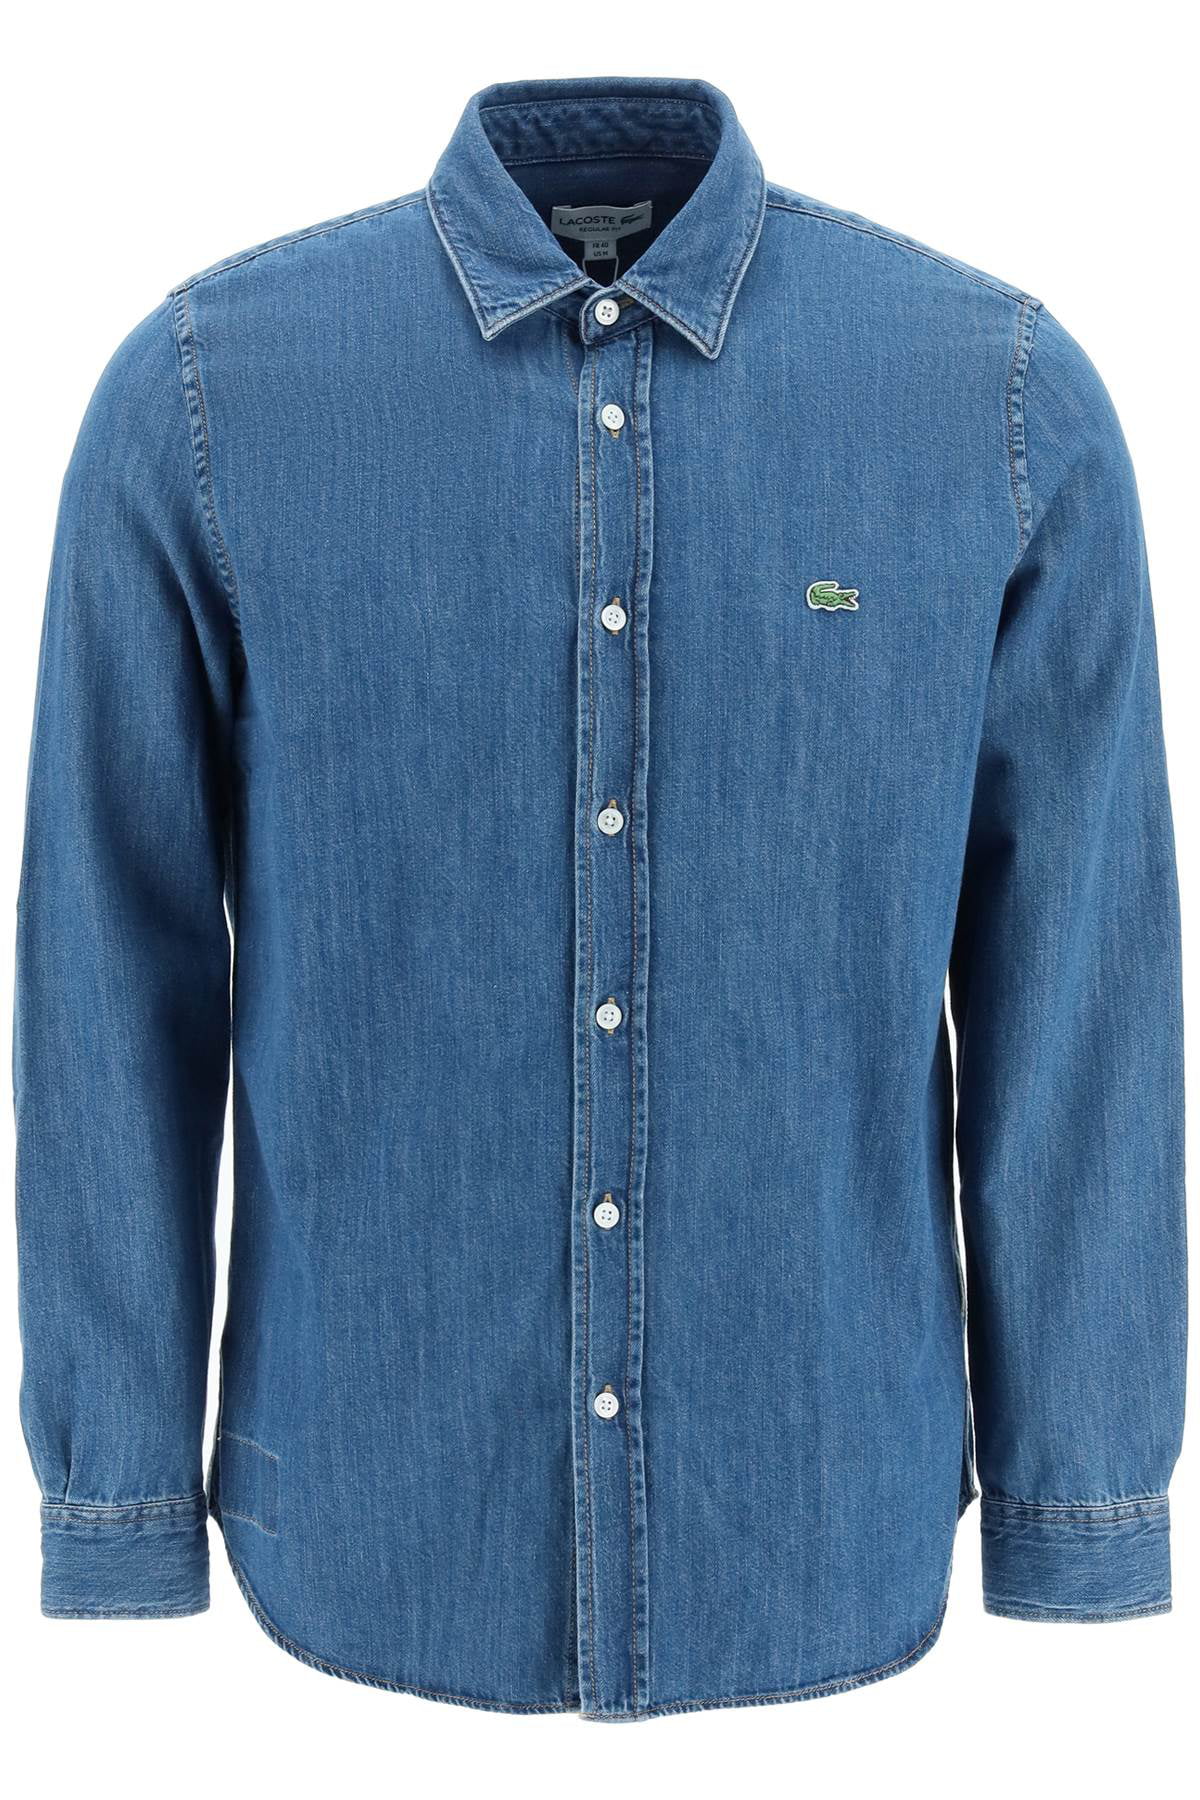 Forfølge Med andre band flydende Lacoste regular fit shirt in organic cotton denim - Walmart.com